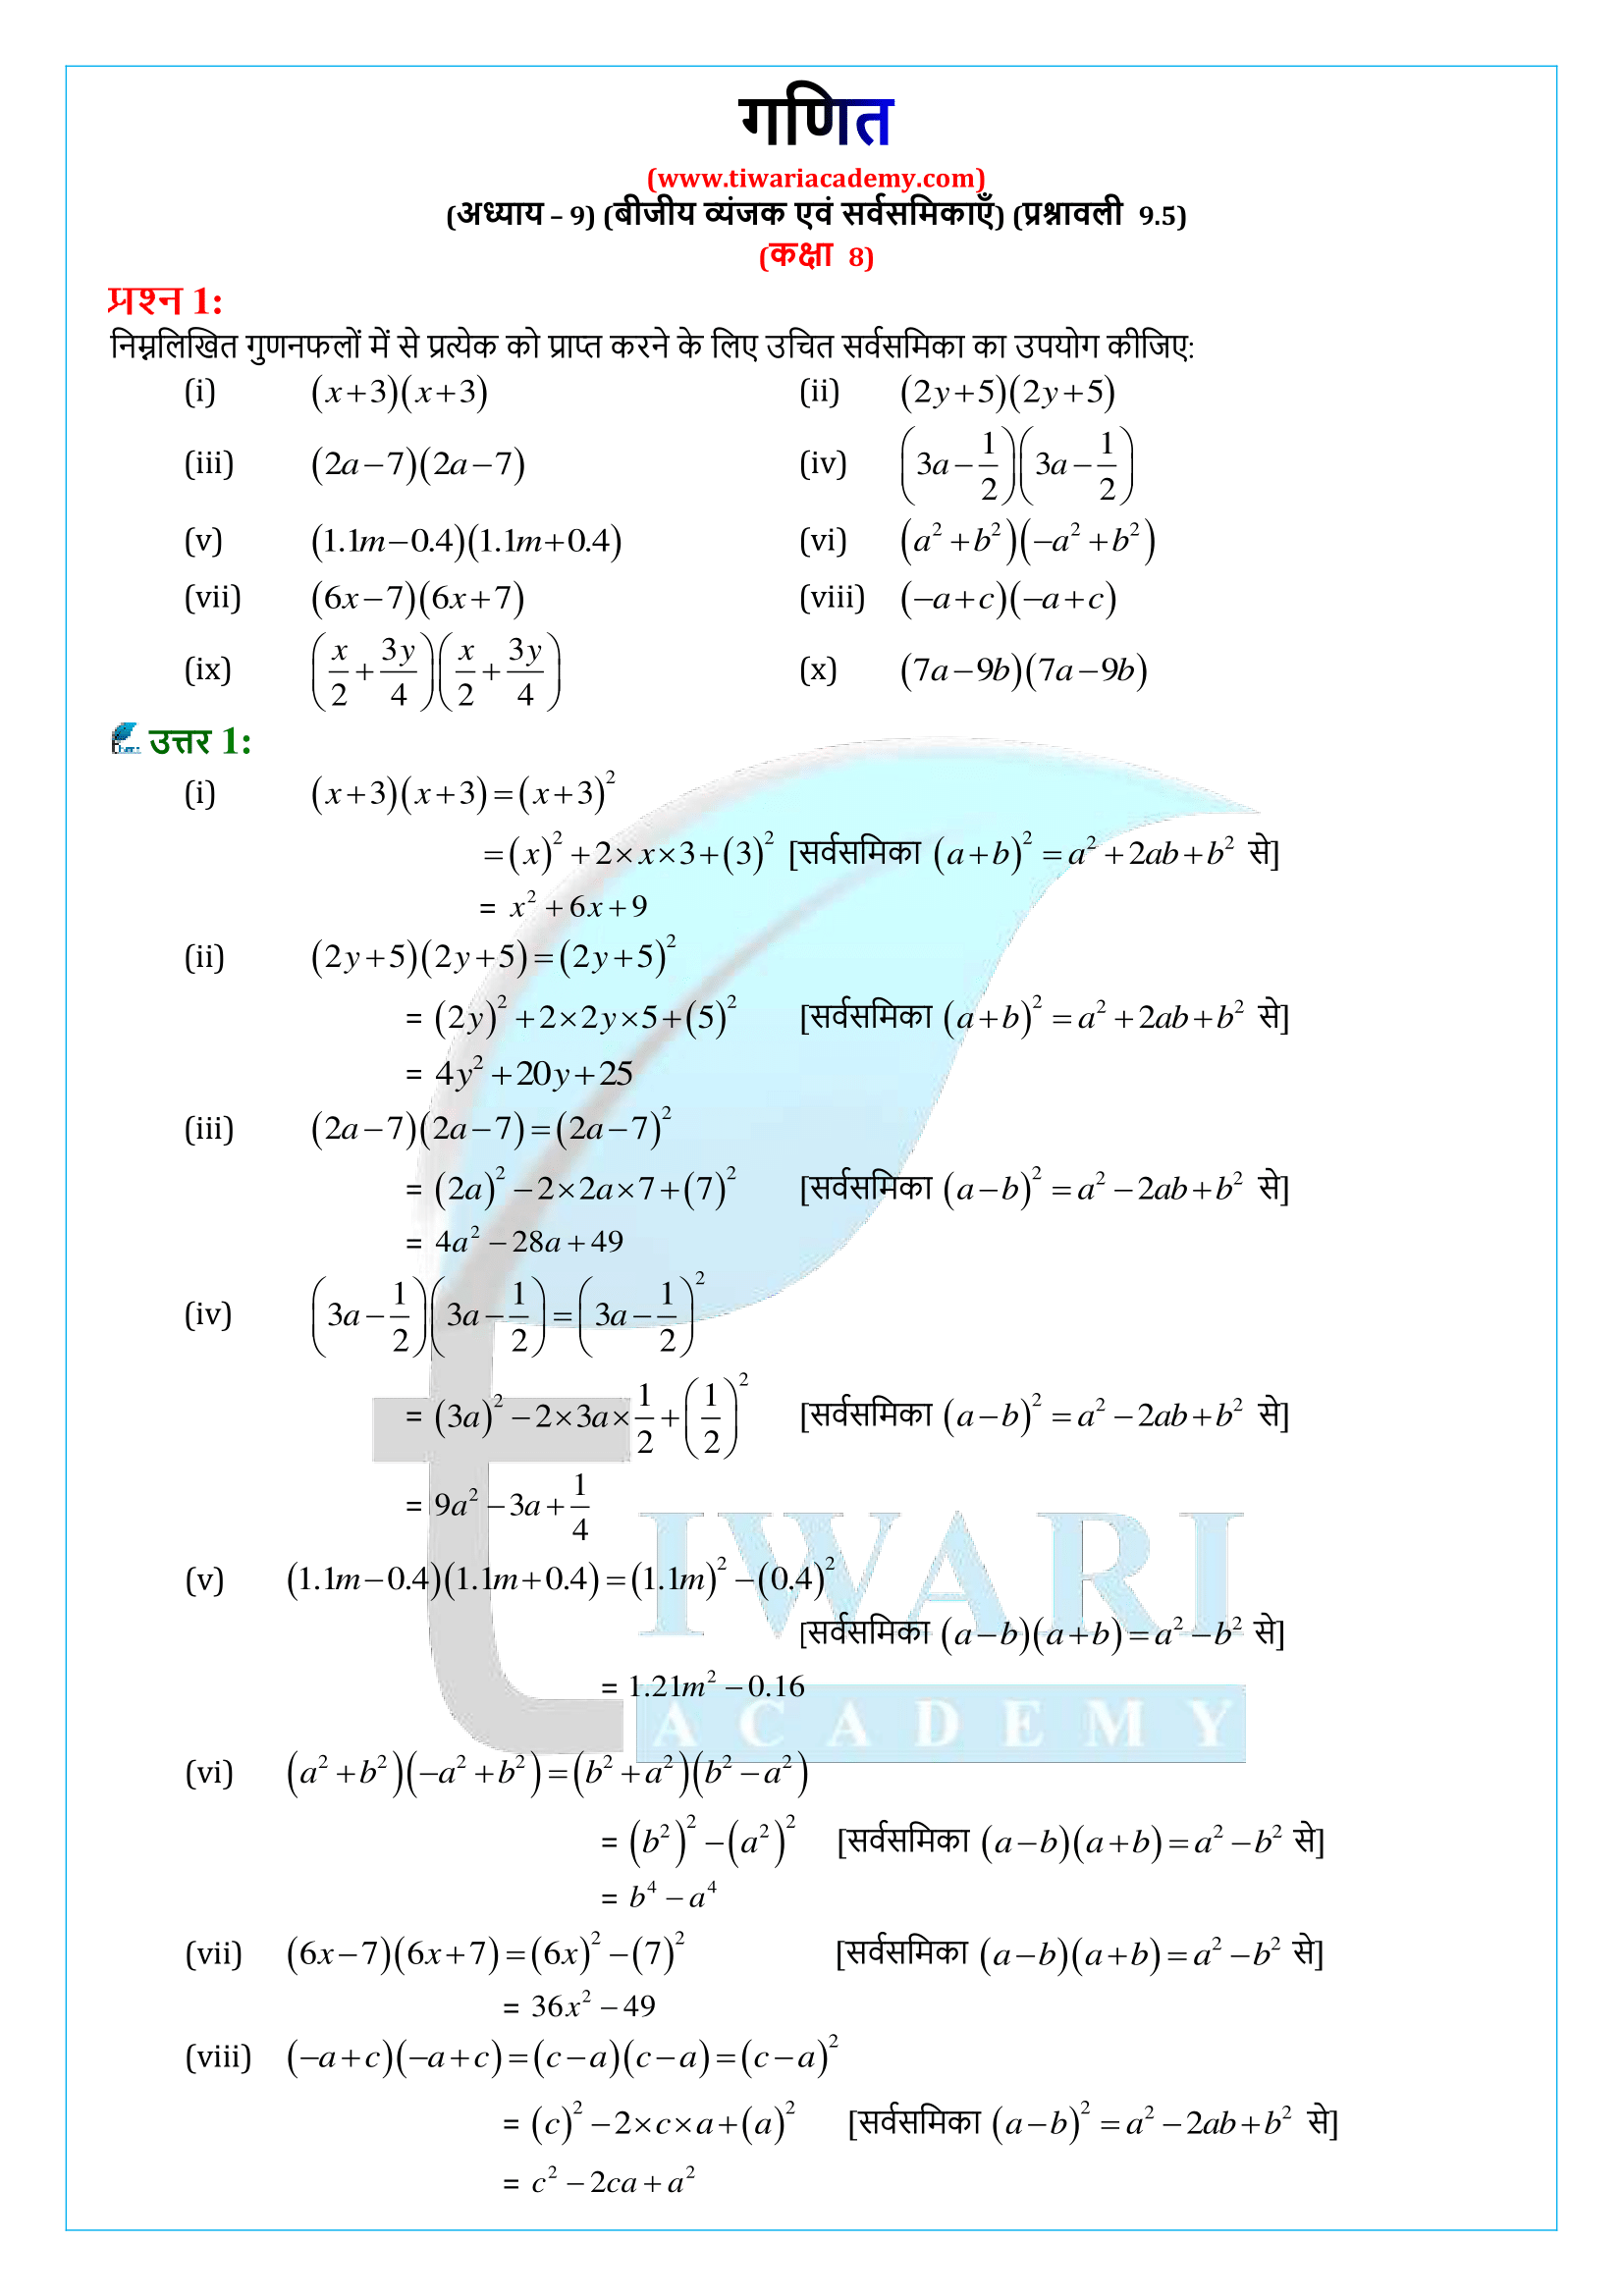 कक्षा 8 गणित प्रश्नावली 9.5 के हल